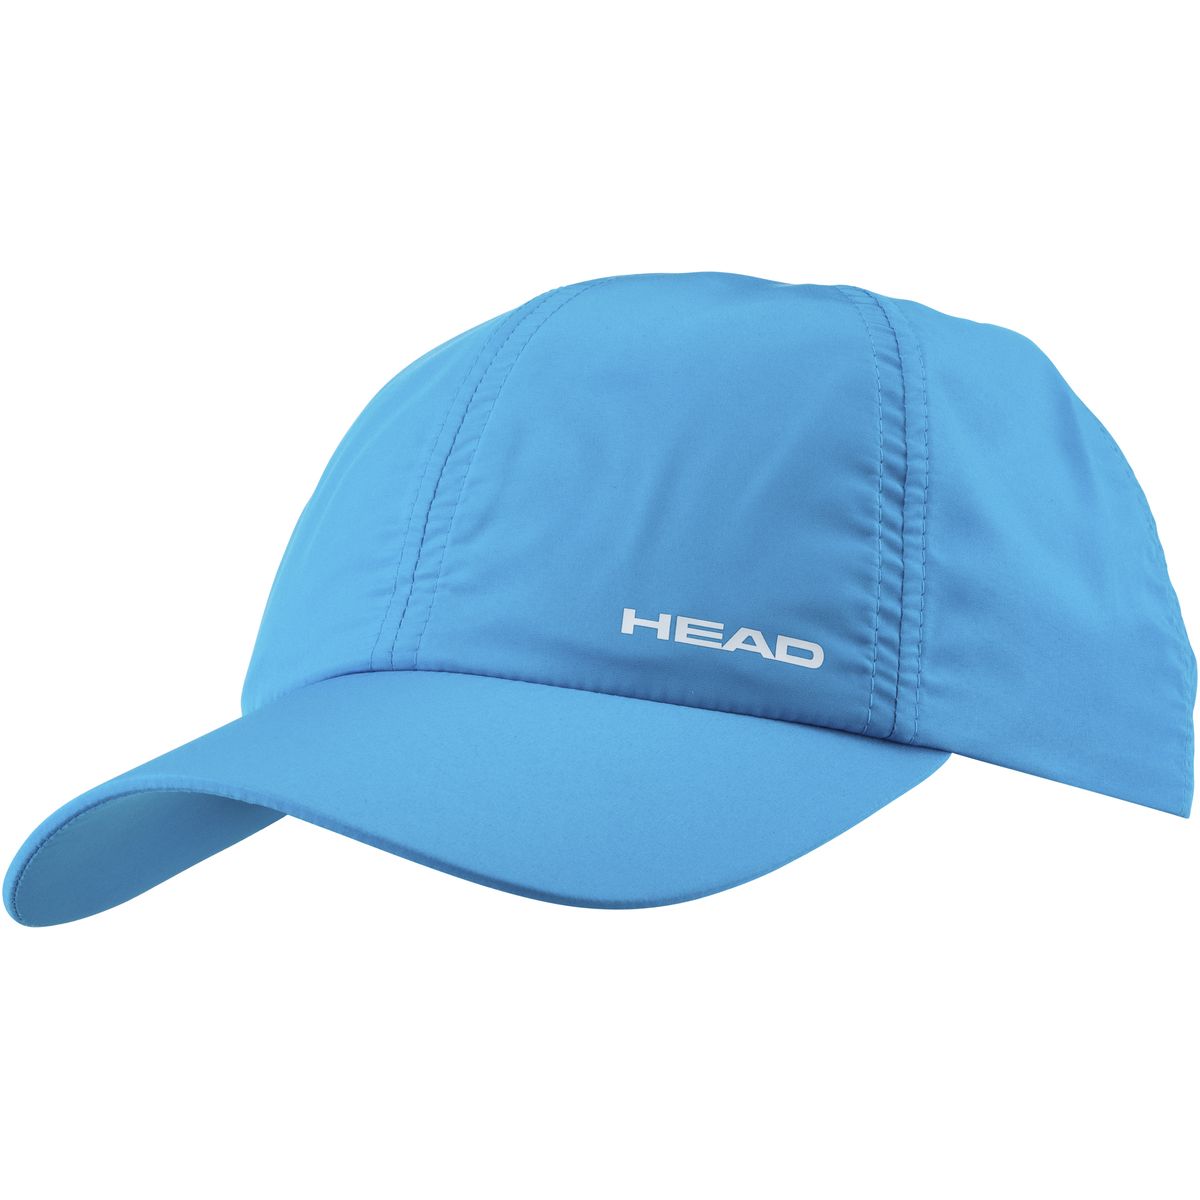 Head Light Function Cap Cap